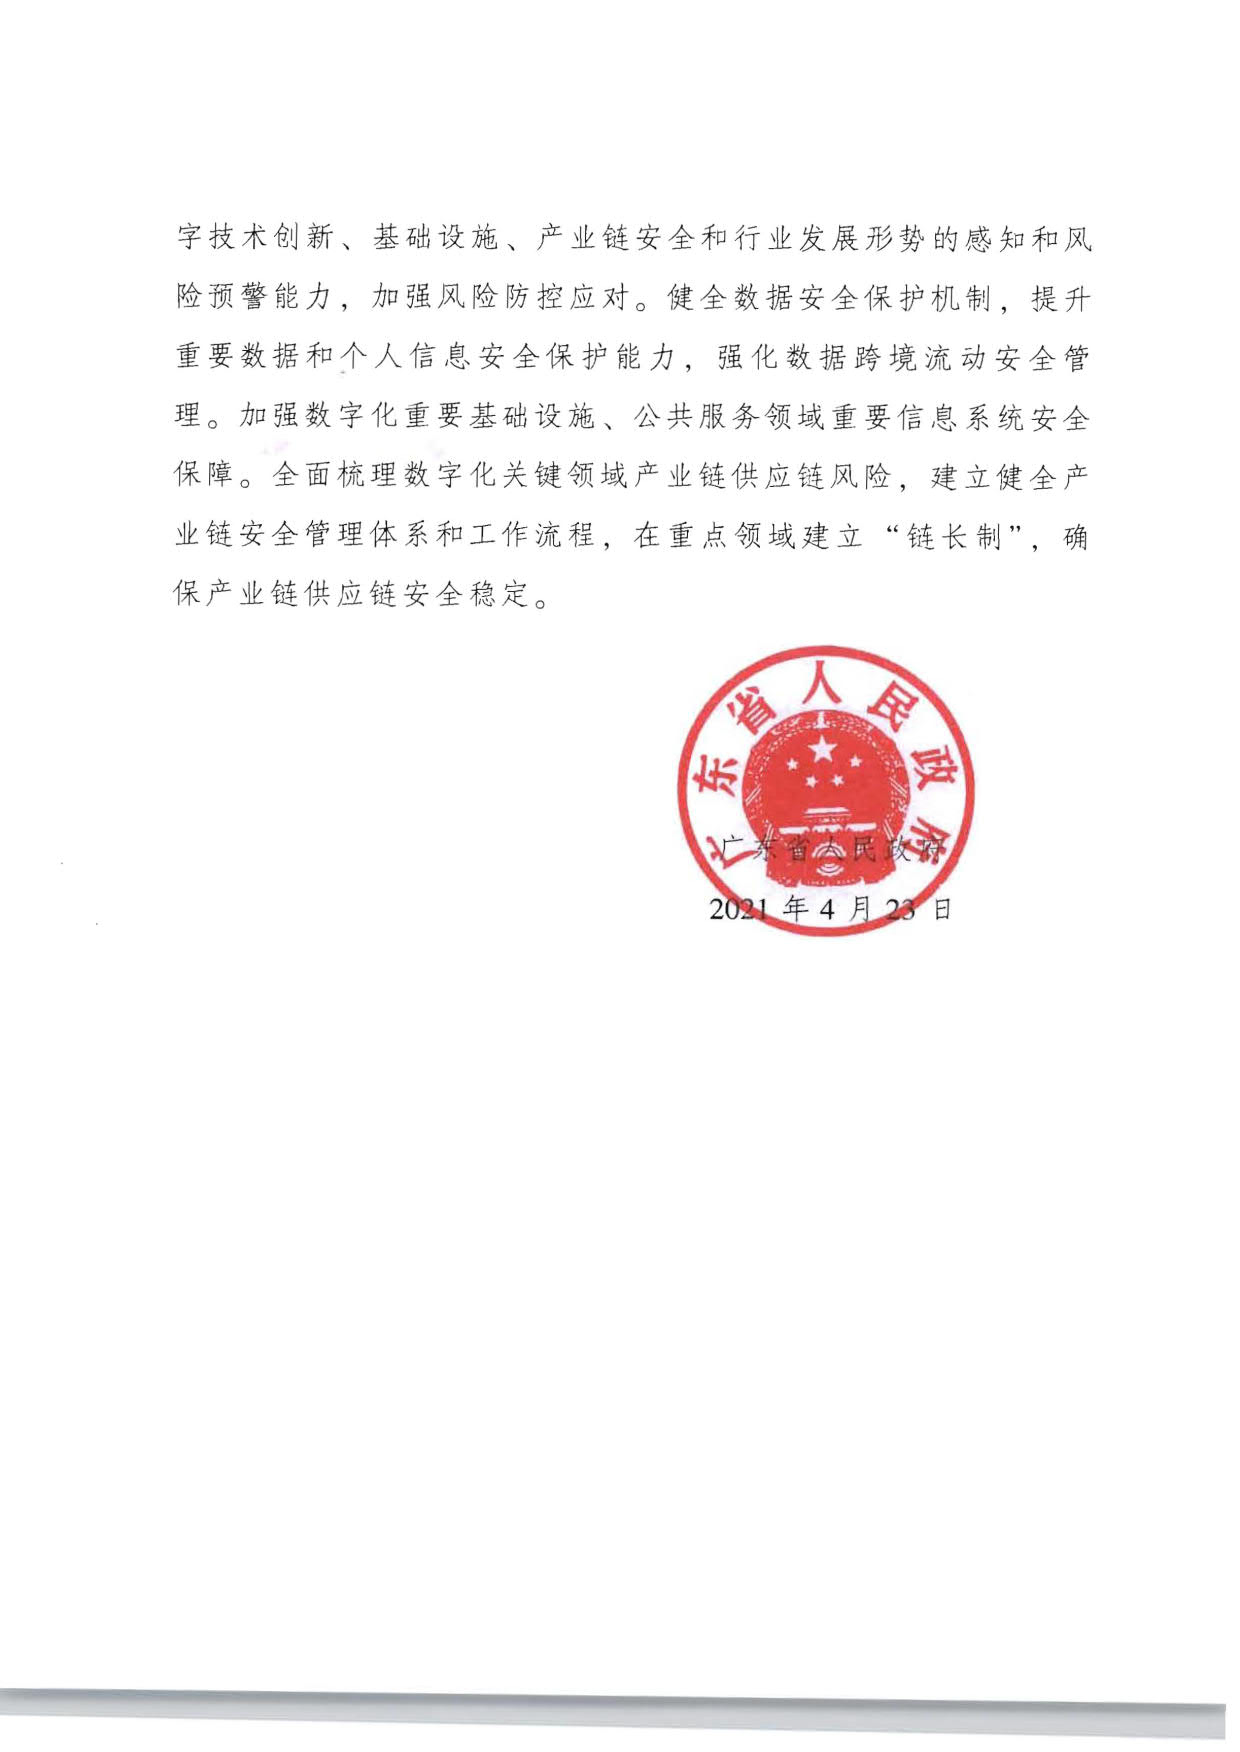 广东省人民政府关于加快数字化发展的意见_18.jpg